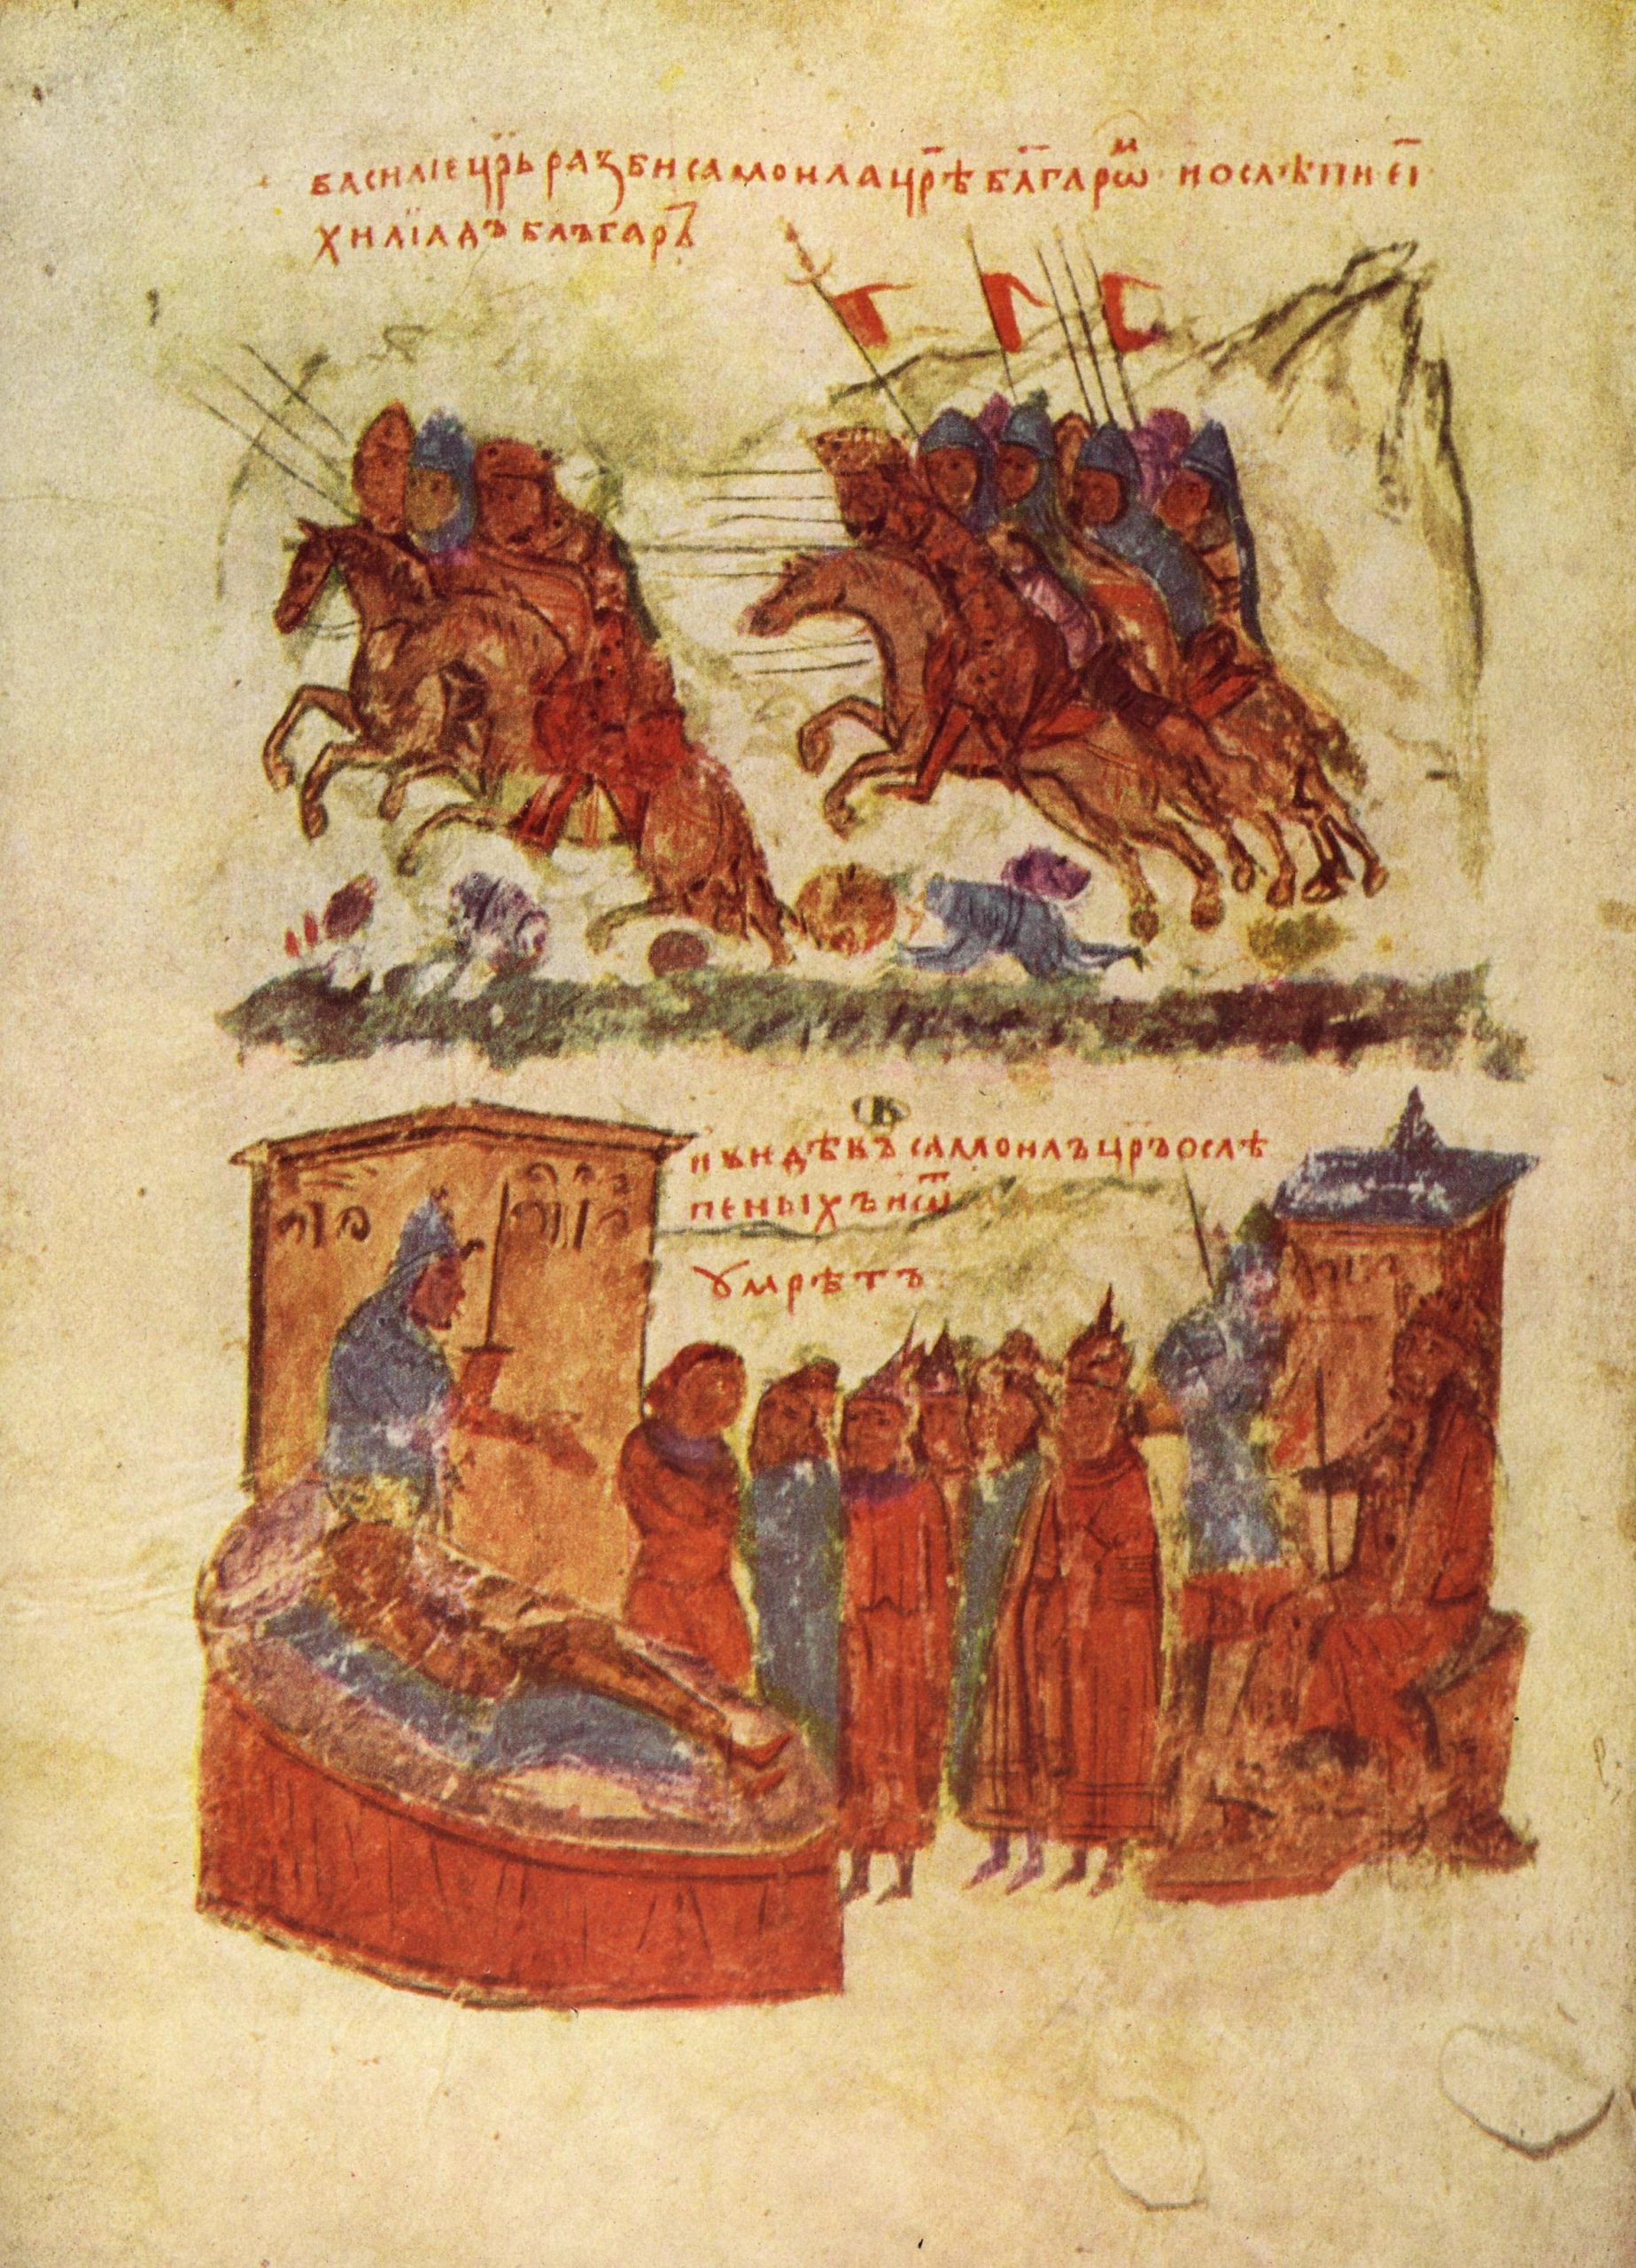 Η νίκη των Βυζαντινών κατά των Βουλγάρων στη Μάχη του Κλειδίου και ο θάνατος του Σαμουήλ.